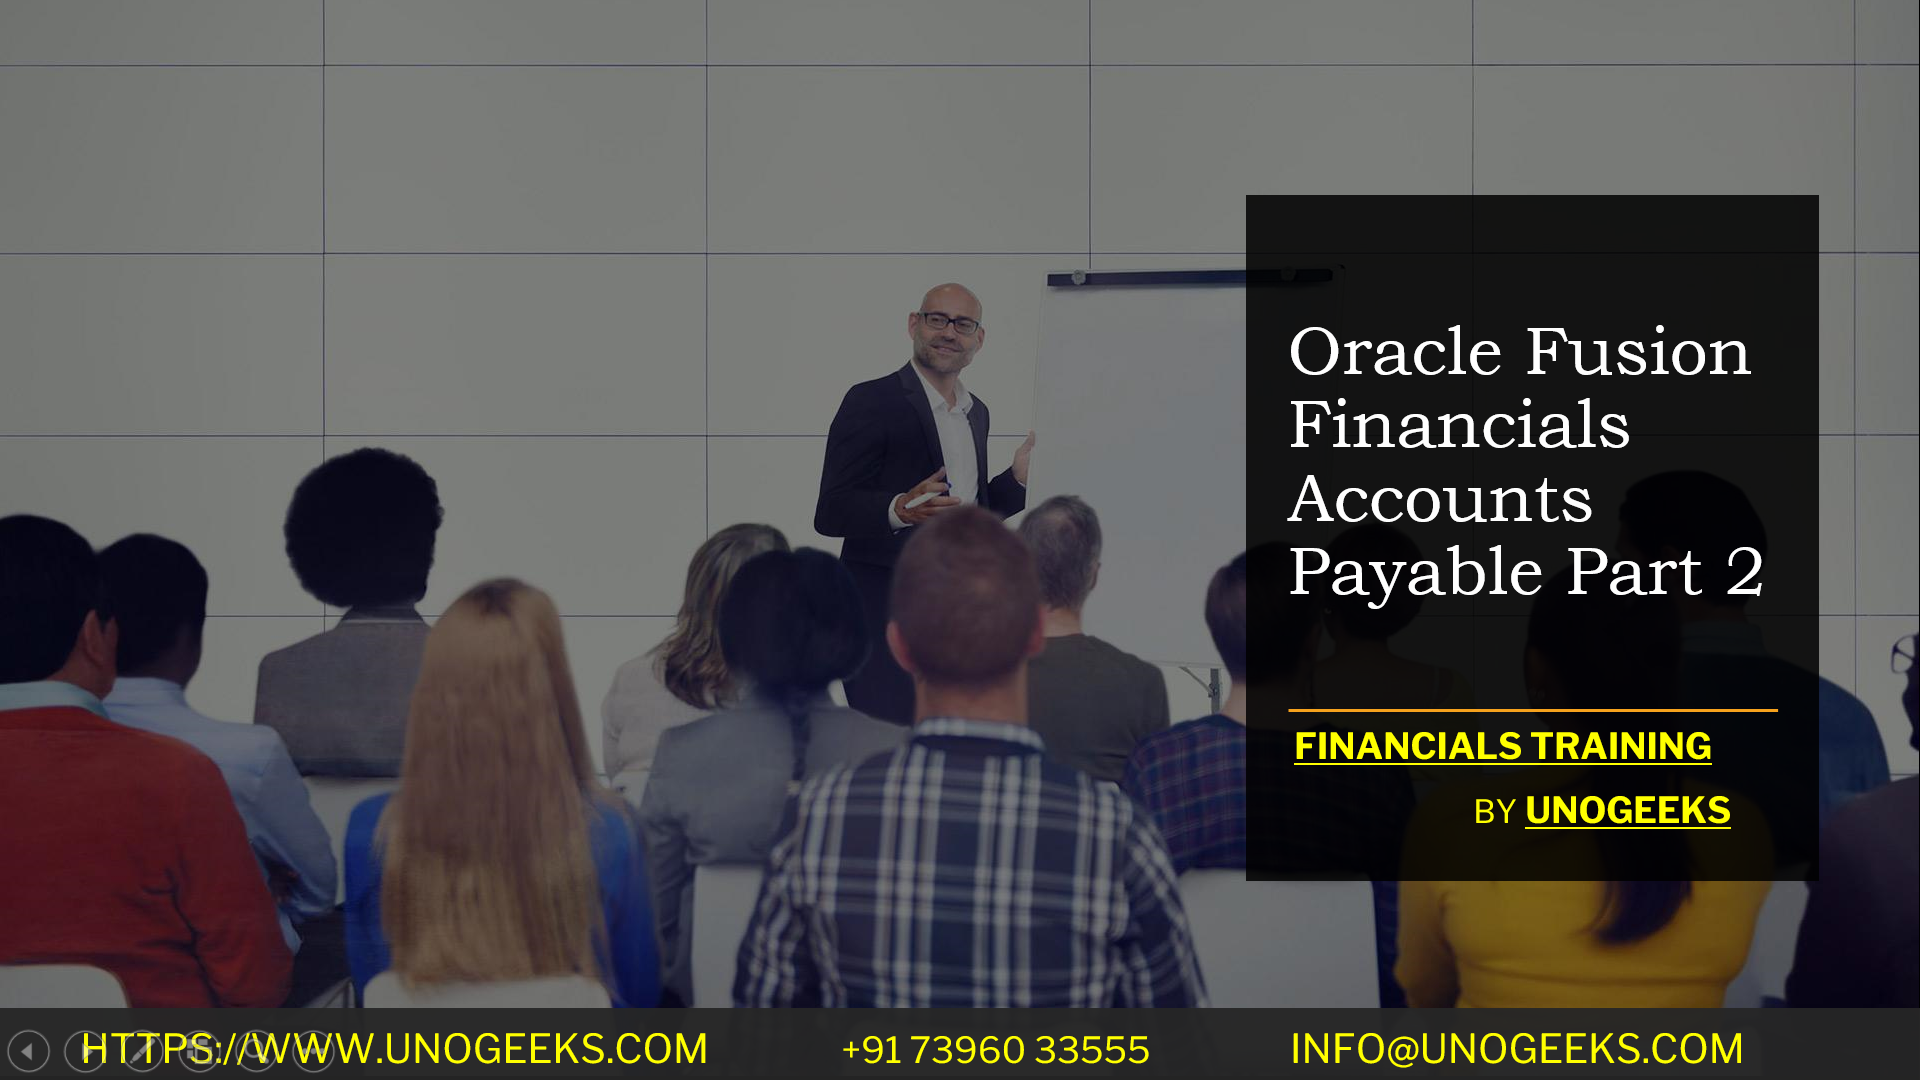 Oracle Fusion Financials Accounts Payable Part 2